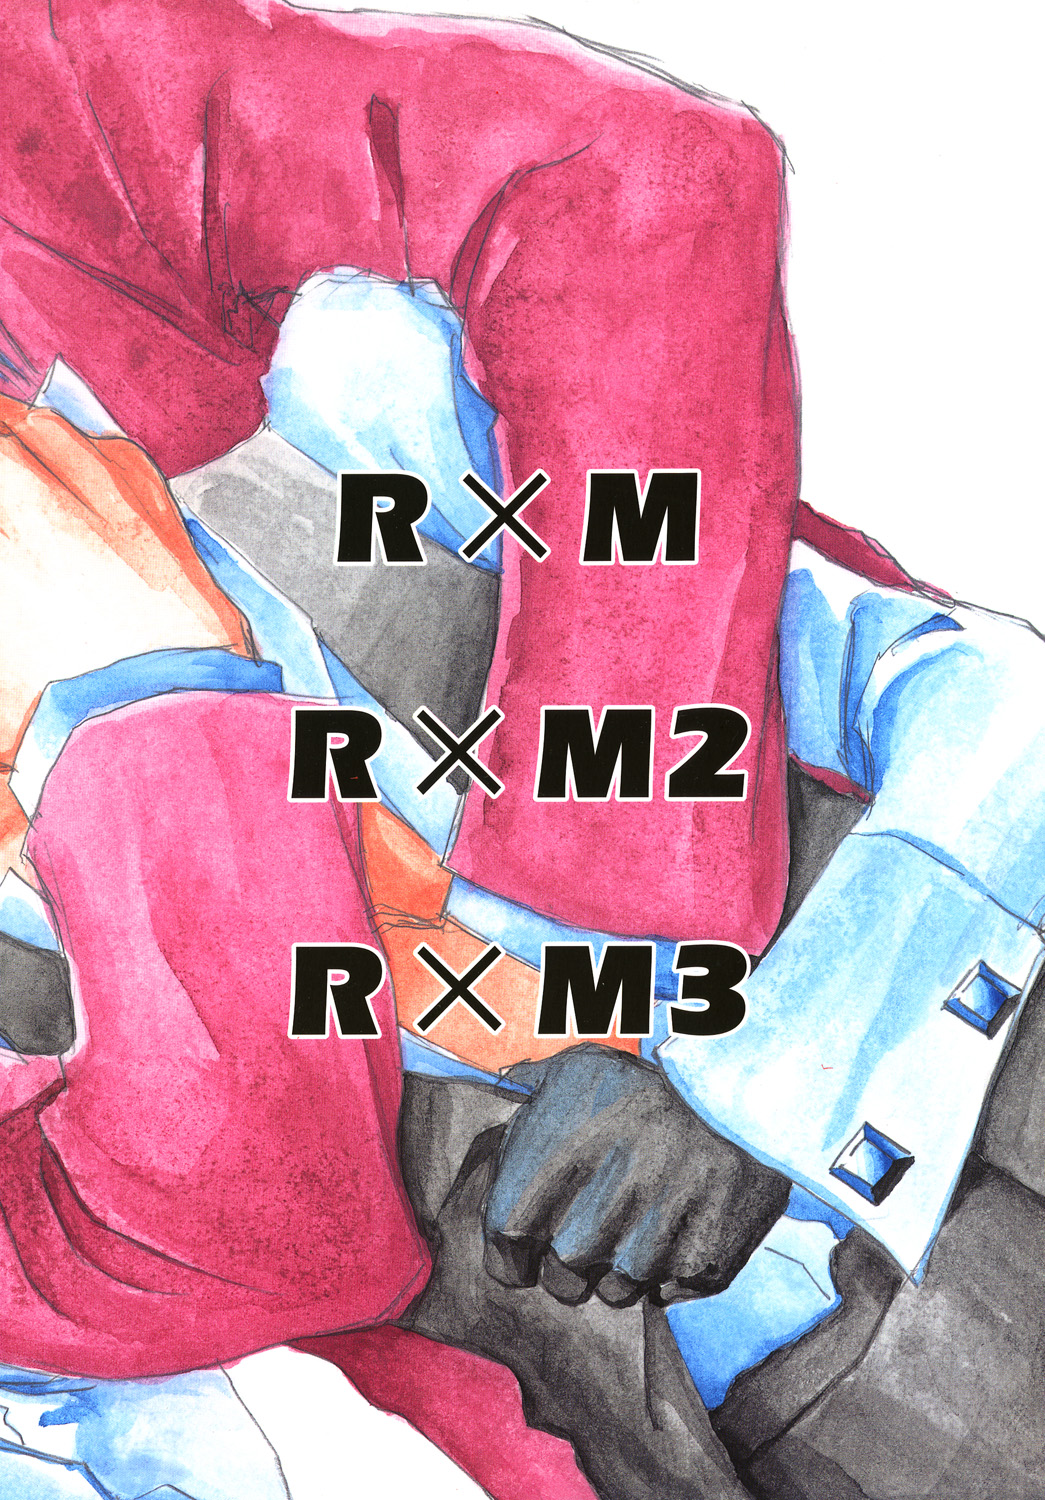 [爆走スペシャル (ヤチ) RxM DX (逆転裁判)